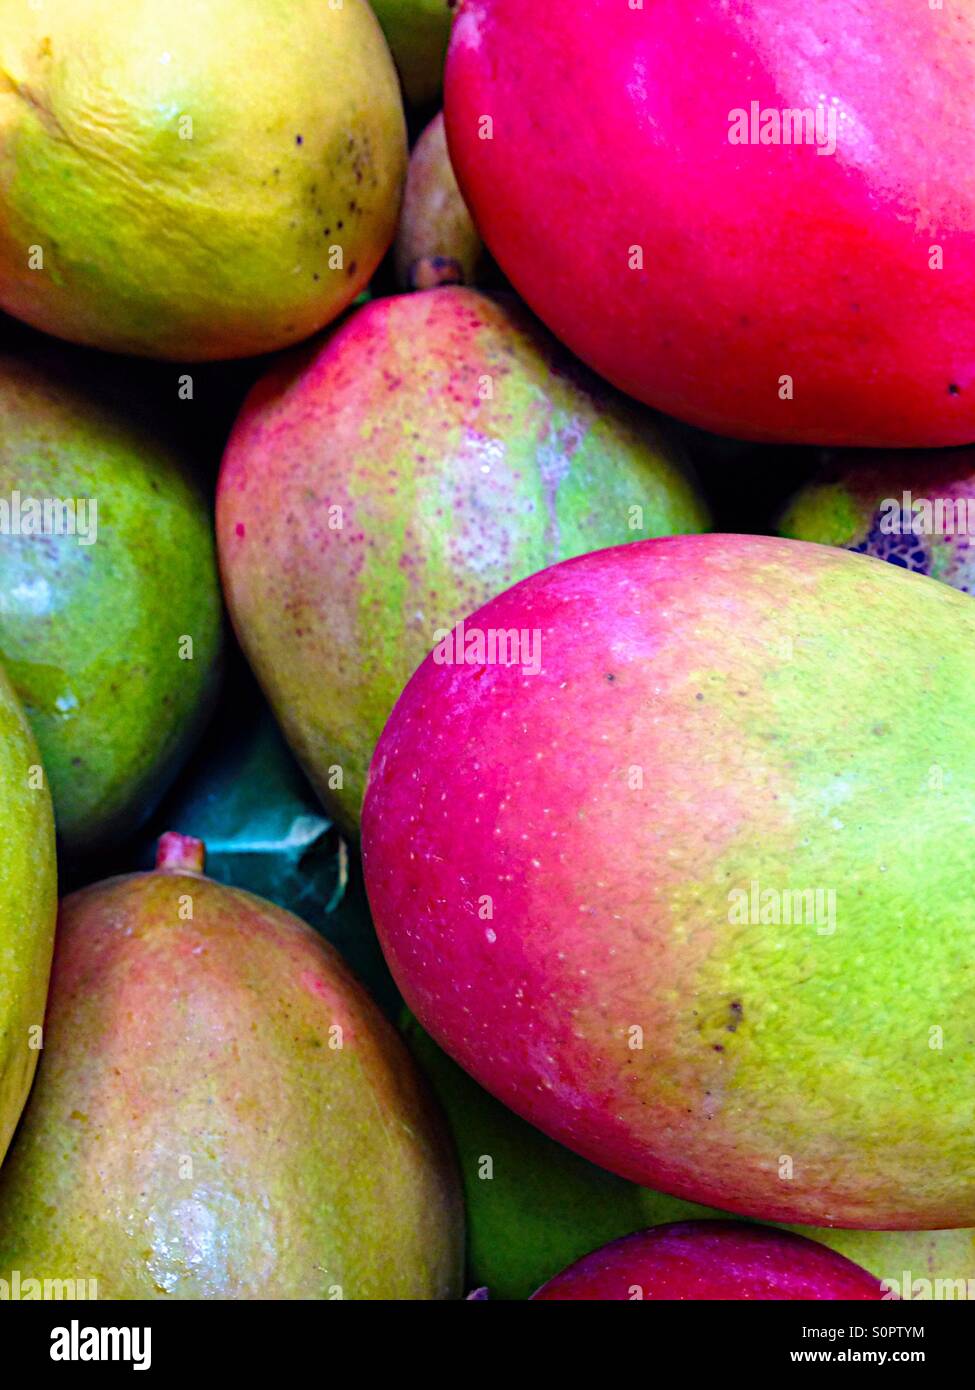 Colorful ripe papayas Stock Photo